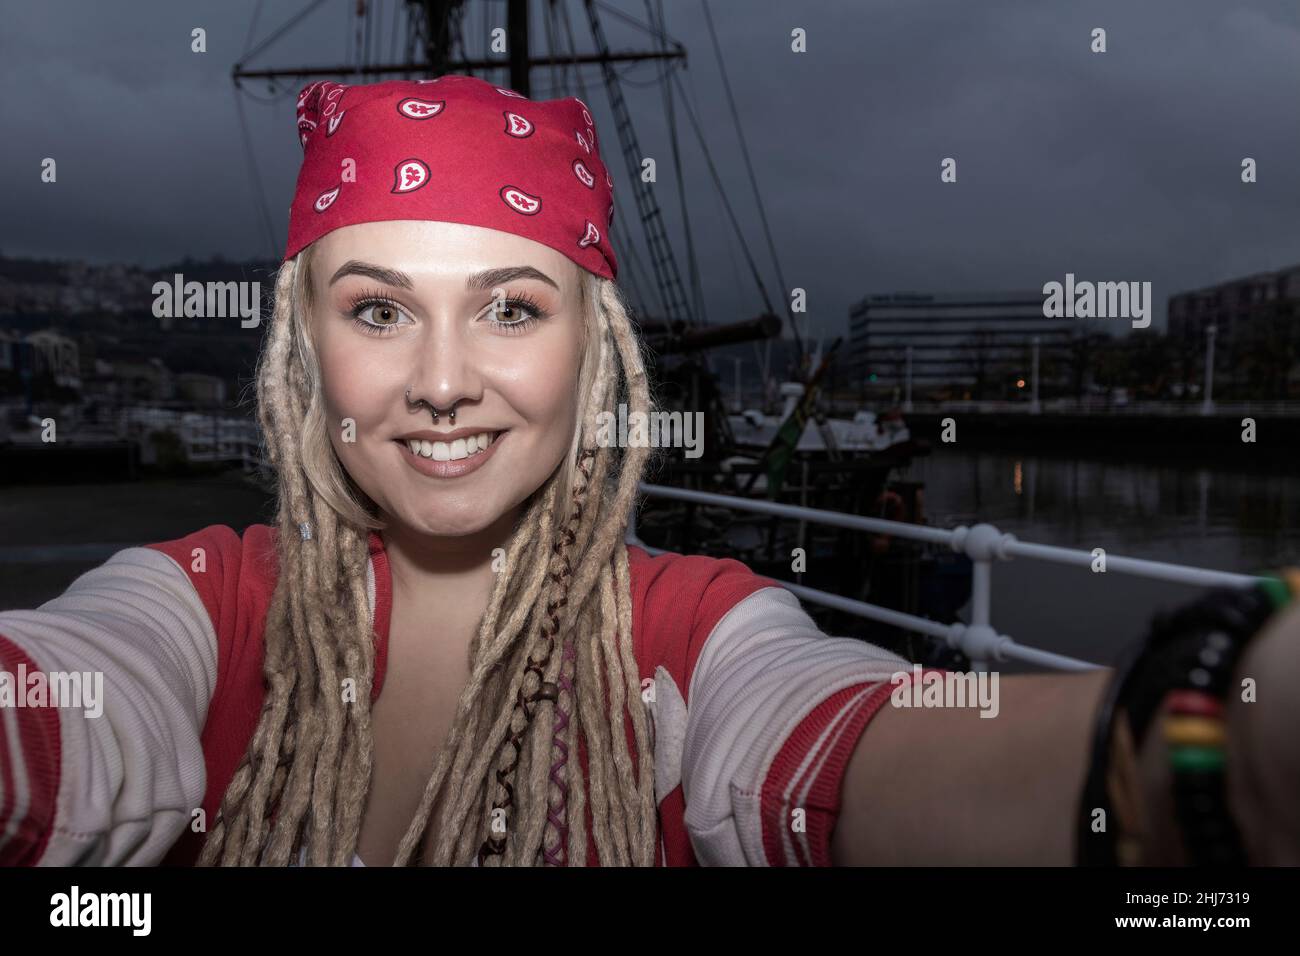 donna bionda graziosa con i dreadlocks che sorridono mentre prendono un selfie Foto Stock